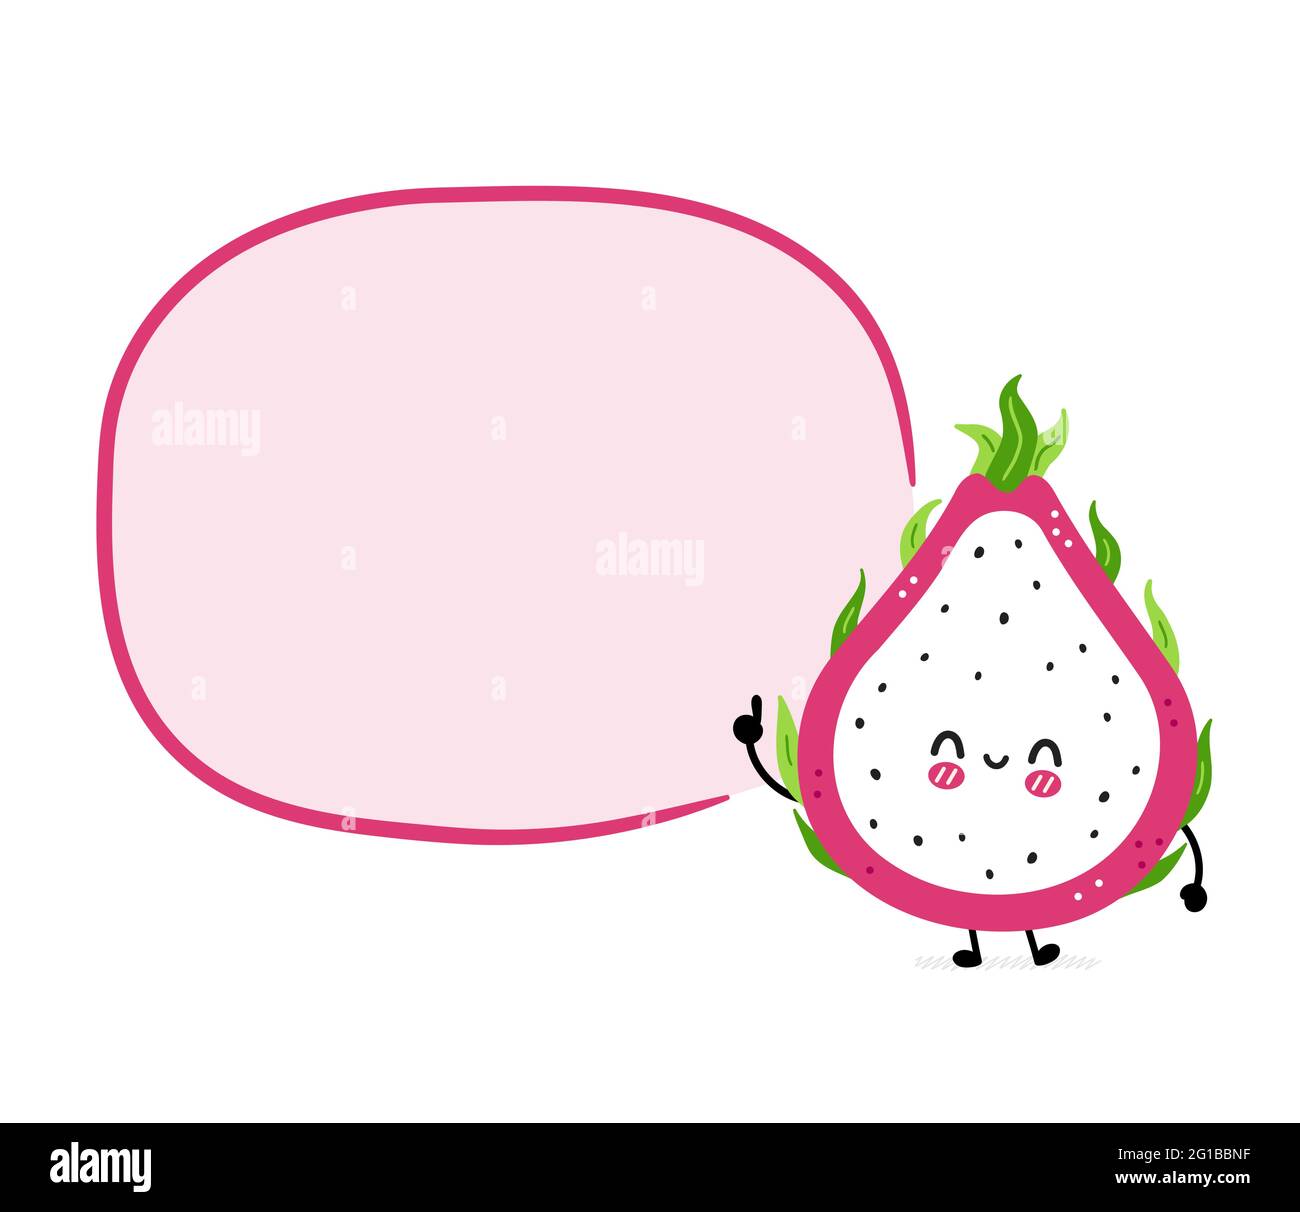 Nette lustige Drachenfrucht mit Sprechblase. Vektor Hand gezeichnet Cartoon kawaii Charakter Illustration Symbol. Isoliert auf weißem Hintergrund. Drachenfrucht, exotisches Food-Charakter-Konzept Stock Vektor